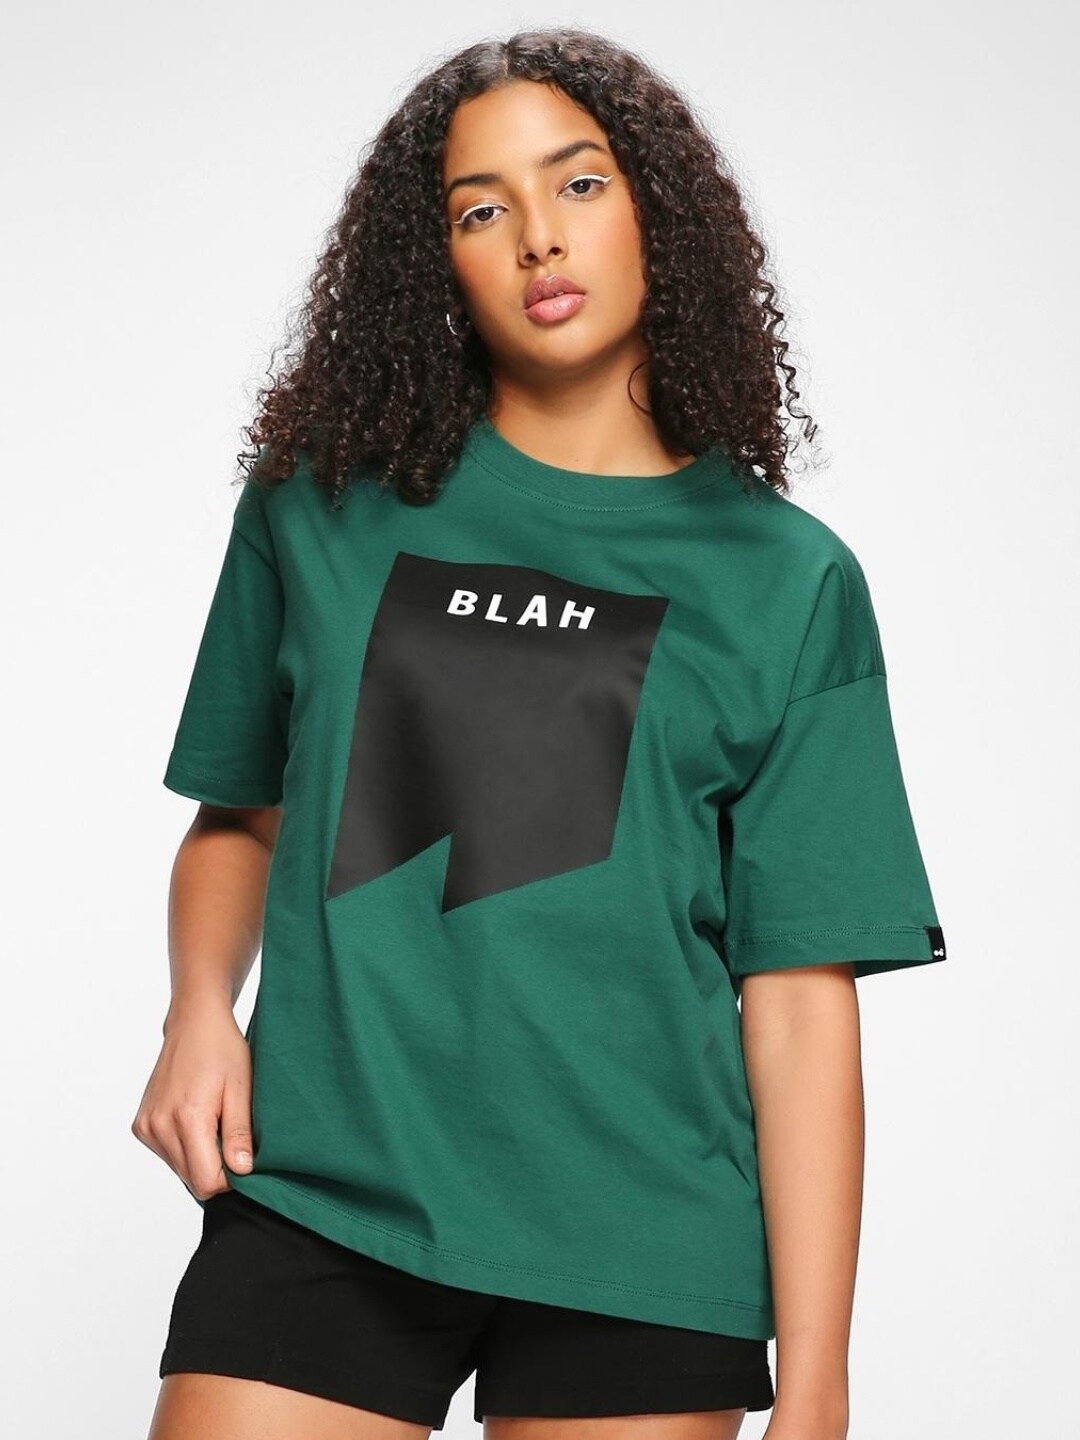 

Bewakoof Women Graphic Printed Cotton T-shirt, Green